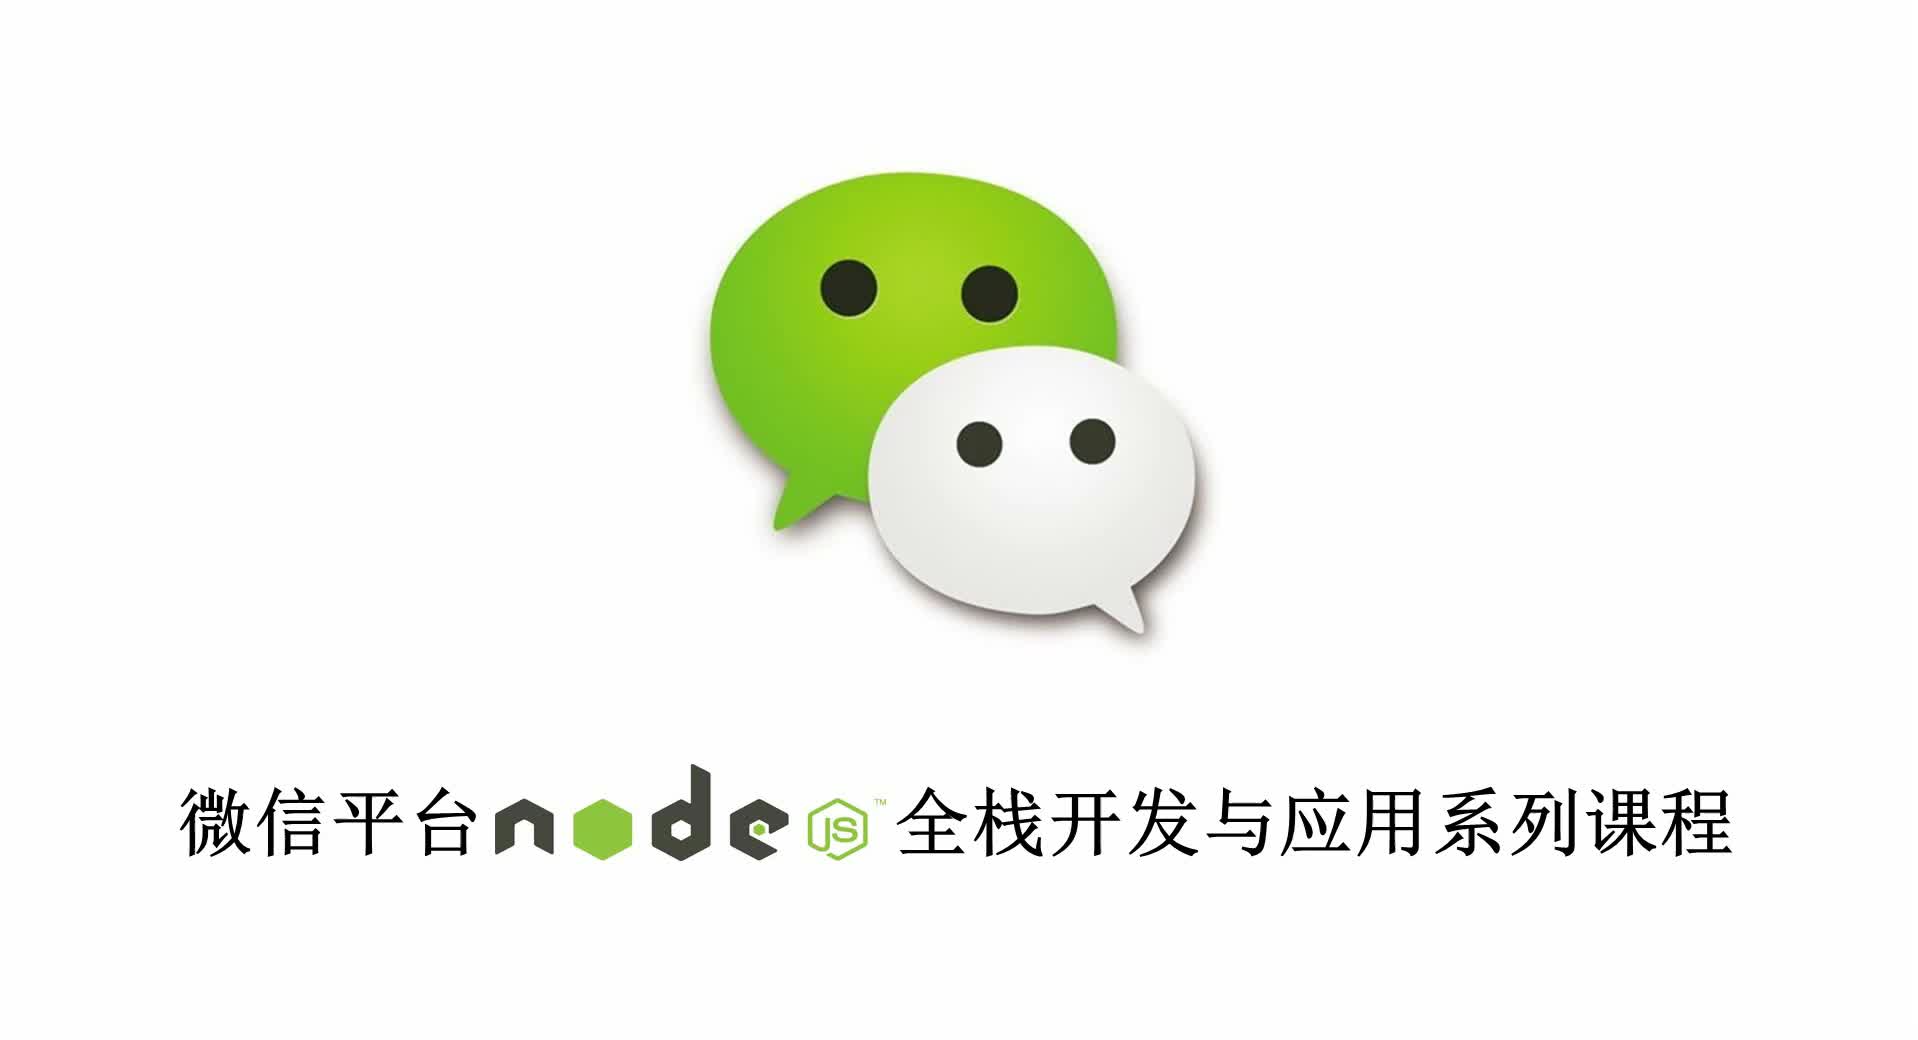 微信平台Node全栈开发系列课程第一套(微信公众号开发与应用)